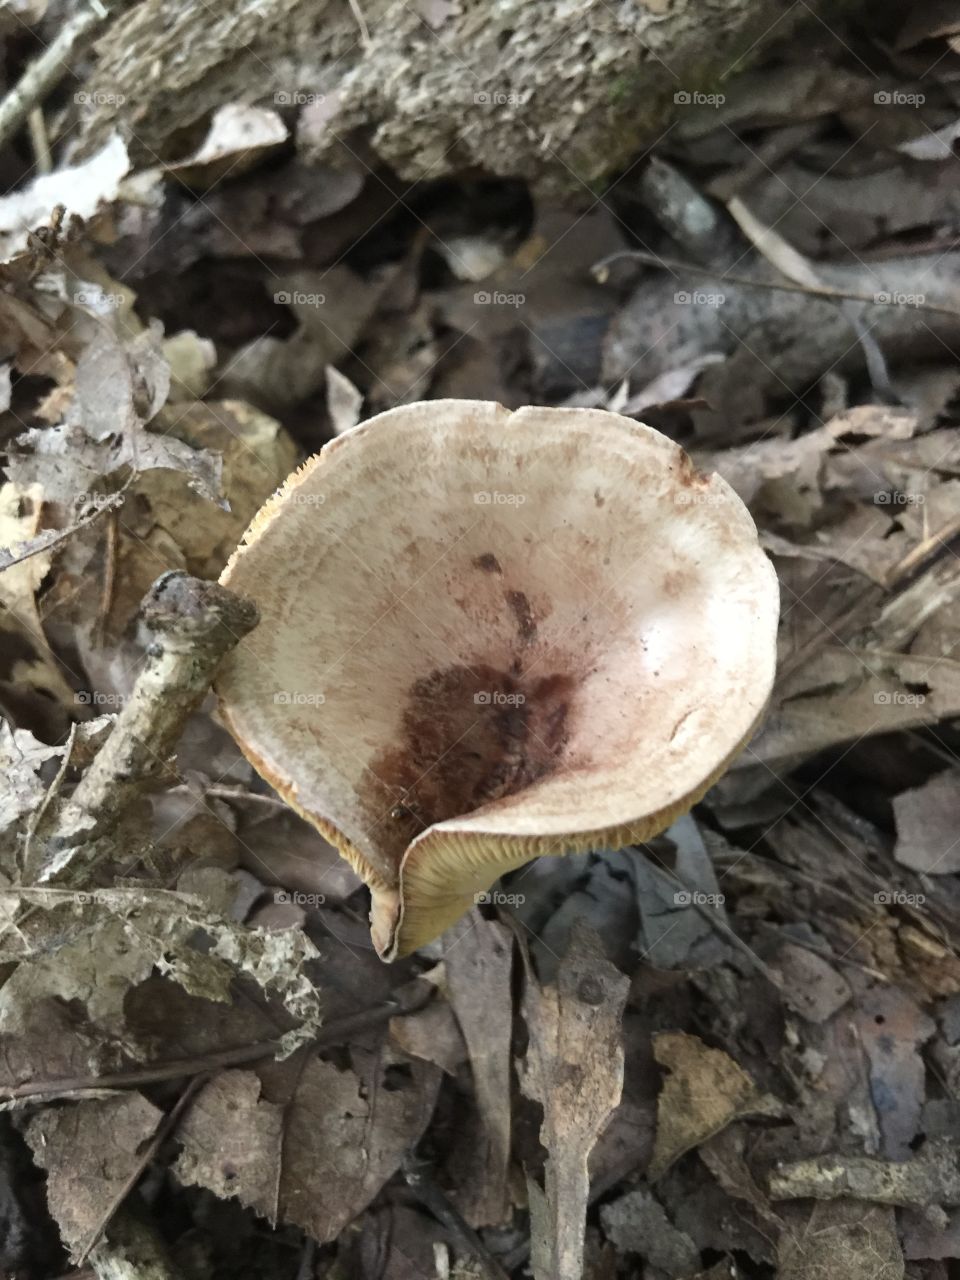 Mushroom funnel